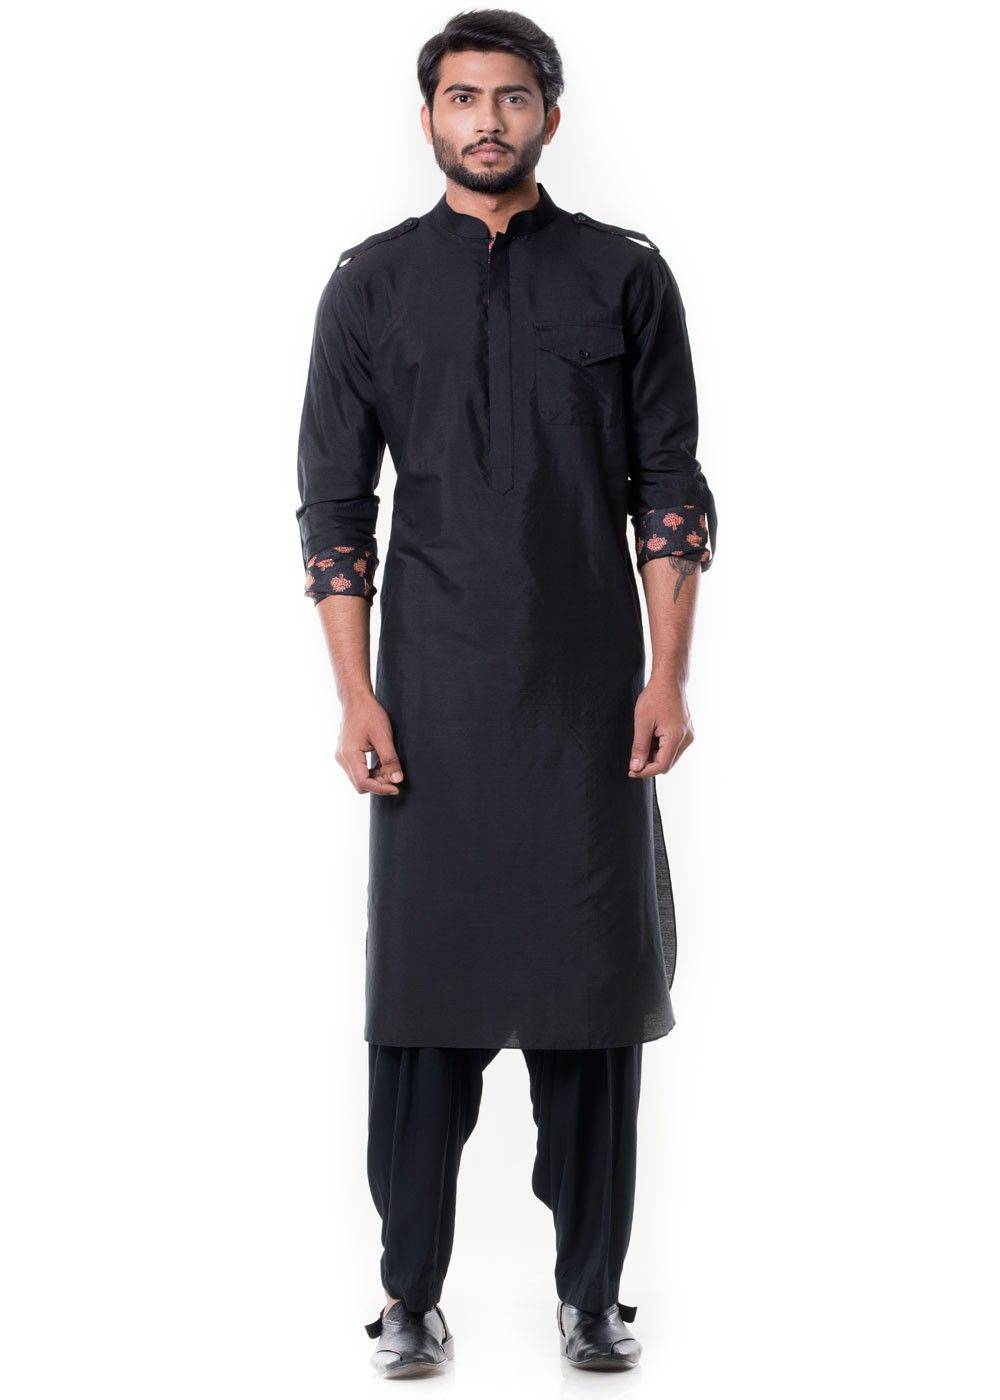 Pathani Suit In Black Colour | escapeauthority.com